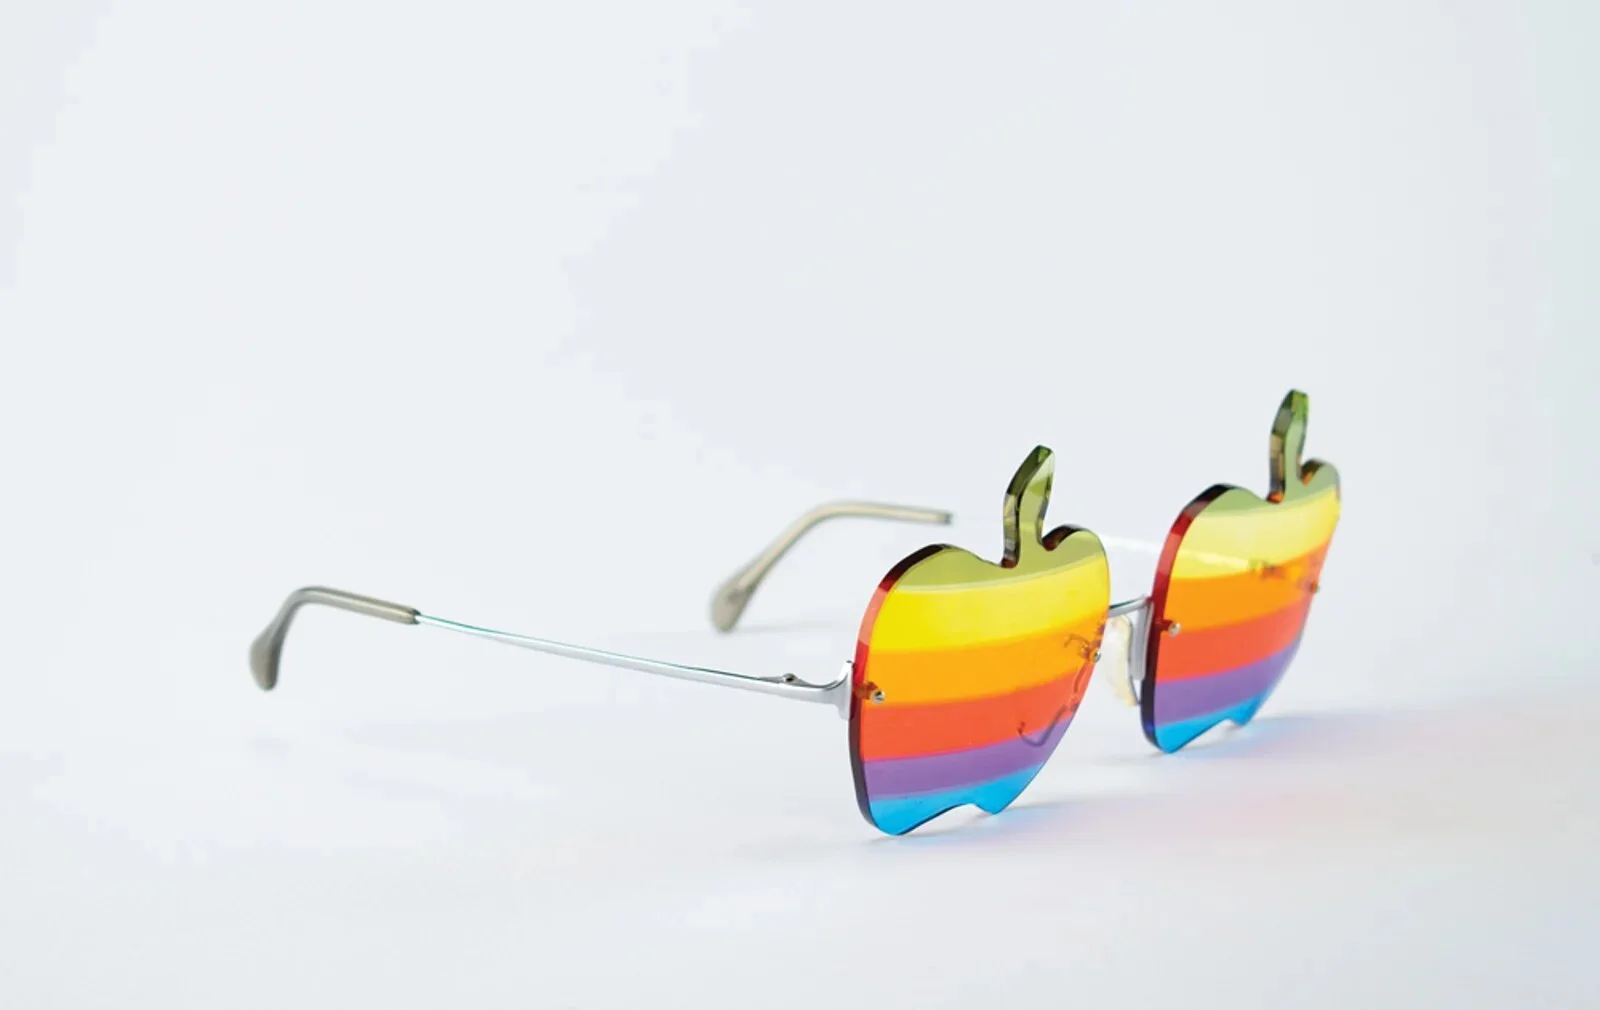 Схемы одного из первых компьютеров Apple Стива Возняка проданы за 630 тысяч долларов - фото 1